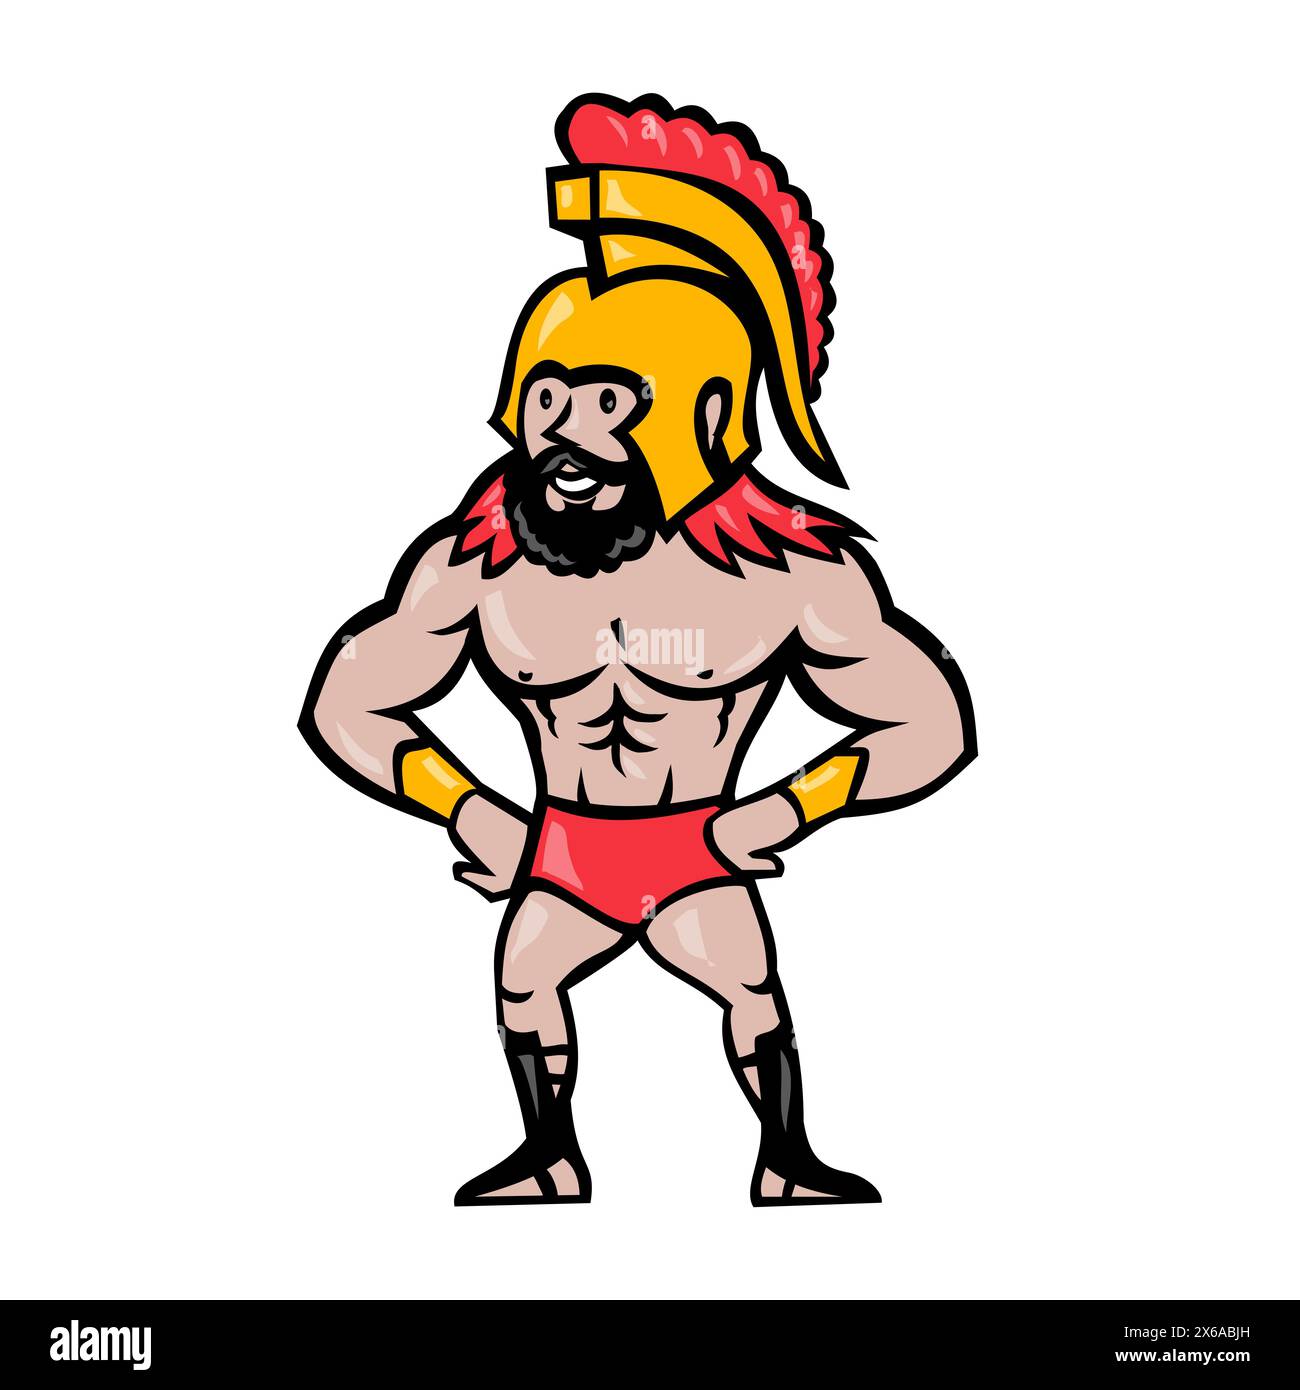 Illustrazione in stile cartone animato di un guerriero spartano che indossa un casco con capelli rossi e barba con mani su fianchi braccia akimbo visto dal davanti su ba isolata Illustrazione Vettoriale